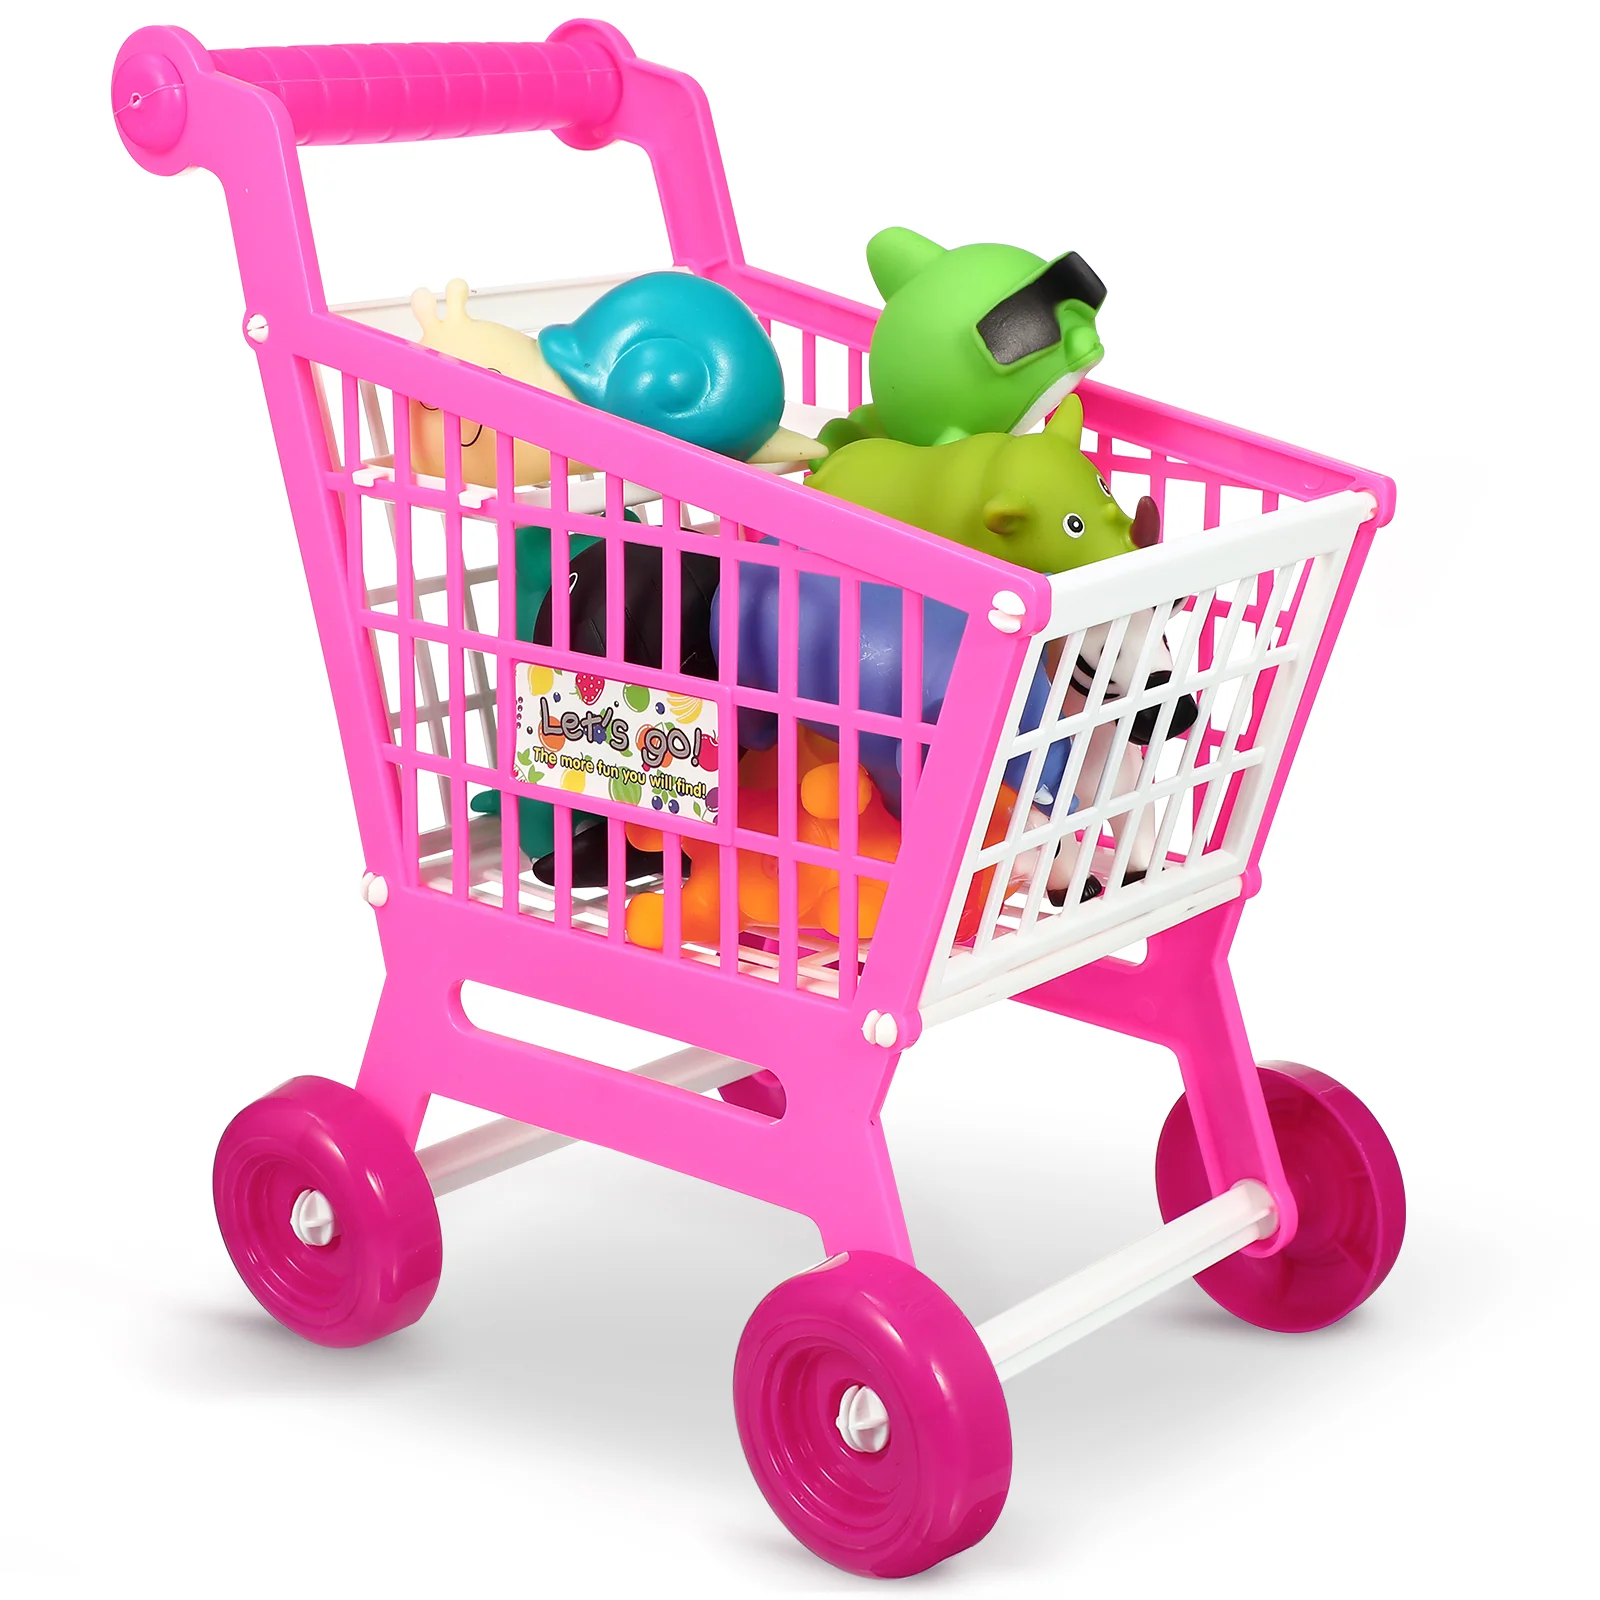 

Имитация корзины для покупок, игрушки, детские пластиковые мини-продуктовые тележки, детские игрушки из АБС-пластика